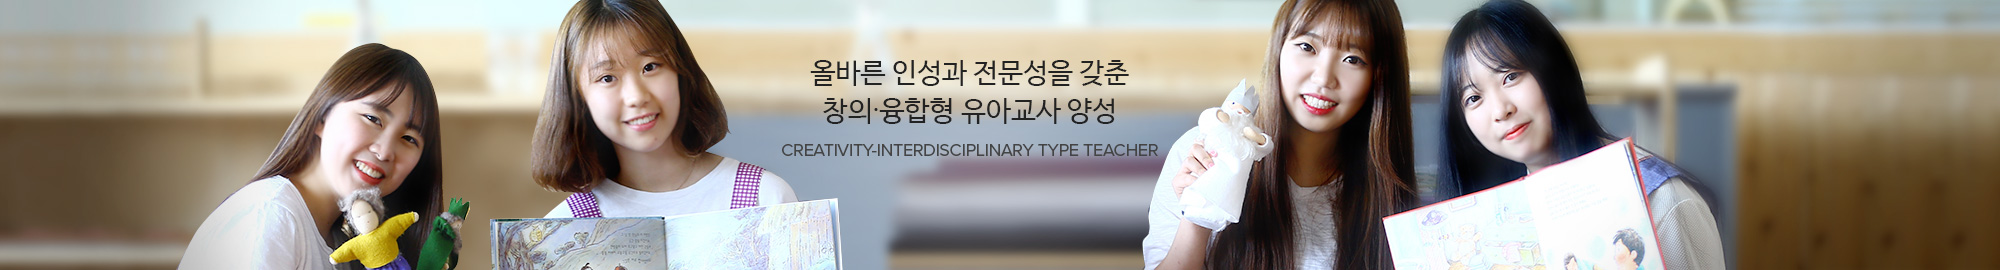 올바른 인성과 전문성을 갖춘 창의∙융합형 유아교사 양성 CREATIVITY-INTERDISCIPLINARY TYPE TEACHER